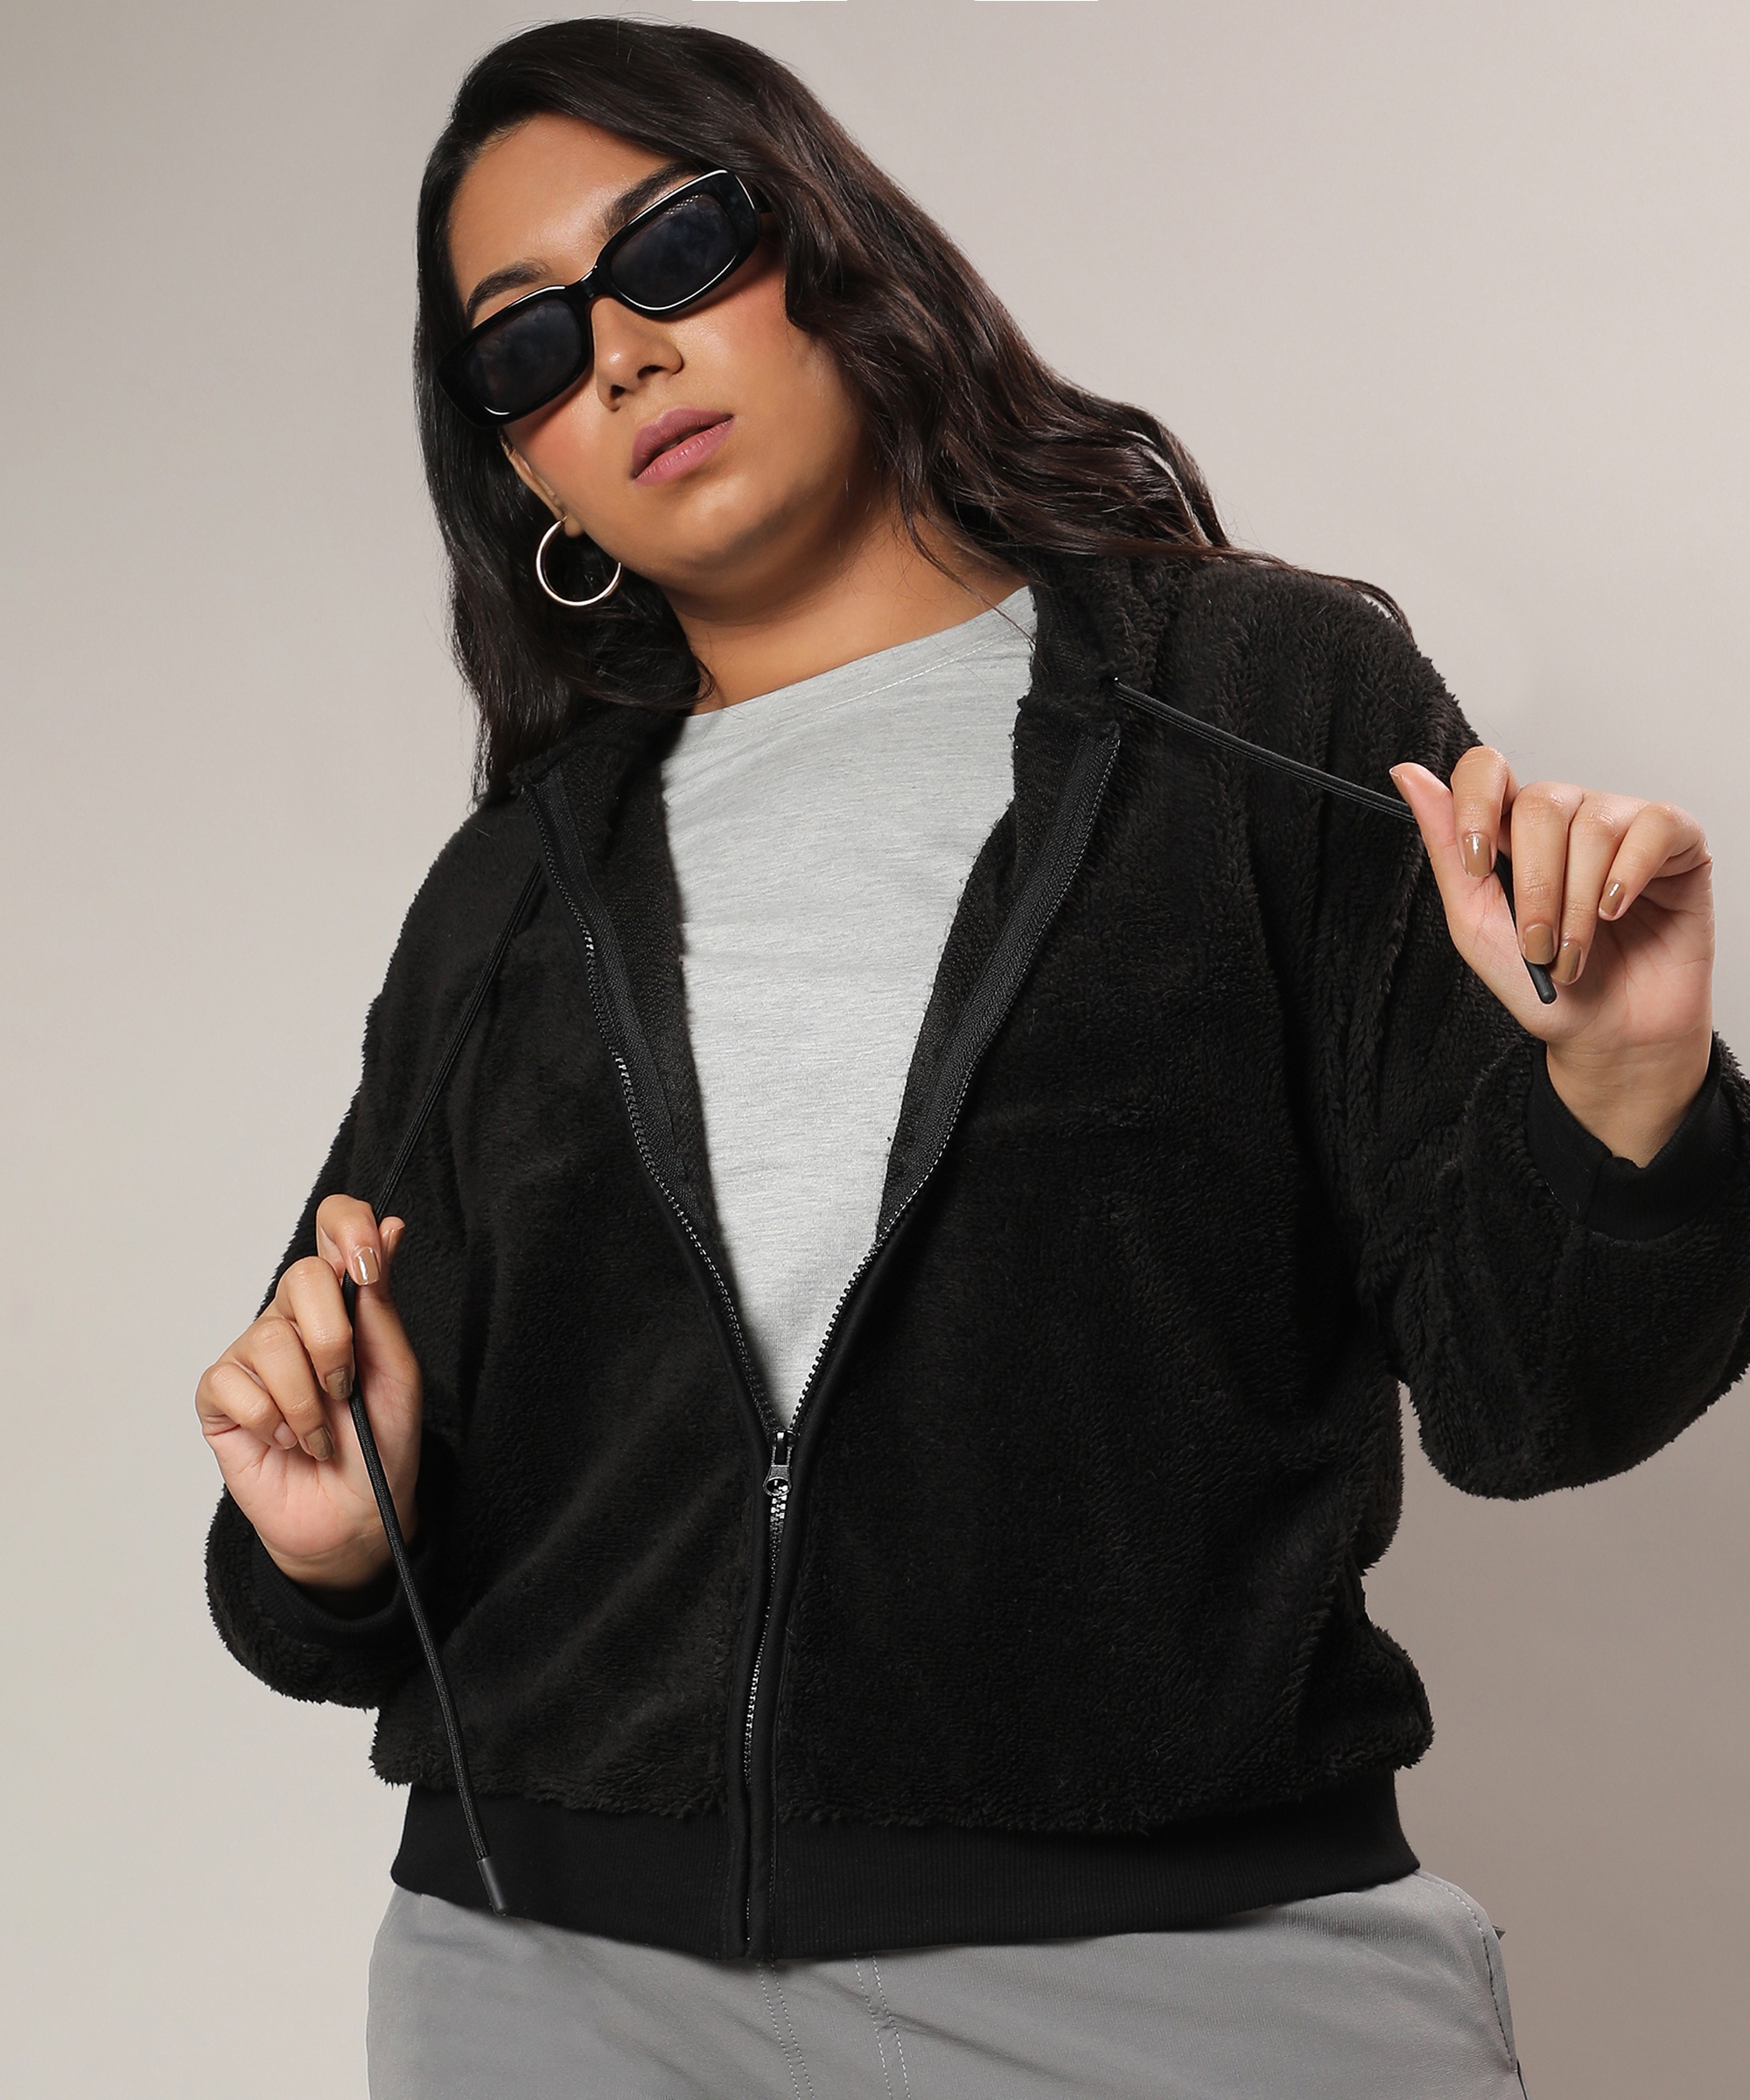 Women's Carbon Black Fleece Hoodie With Zip-Closure